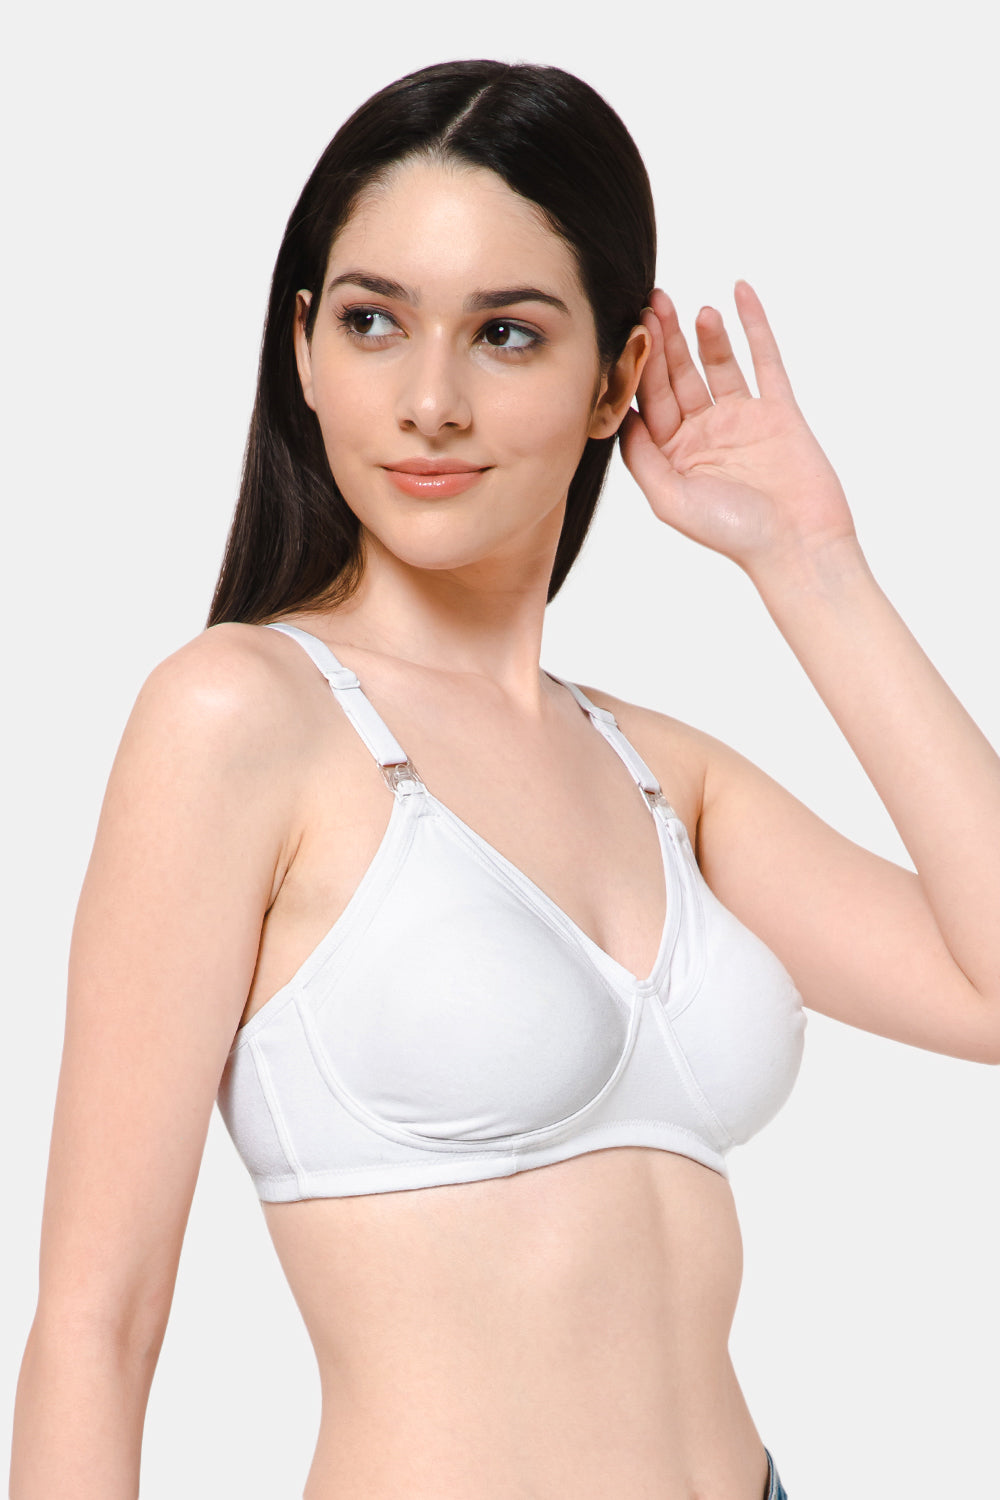 Women's and Girl's every day cotton bra size 36B,38B,40B,42B,44B(XXXL)